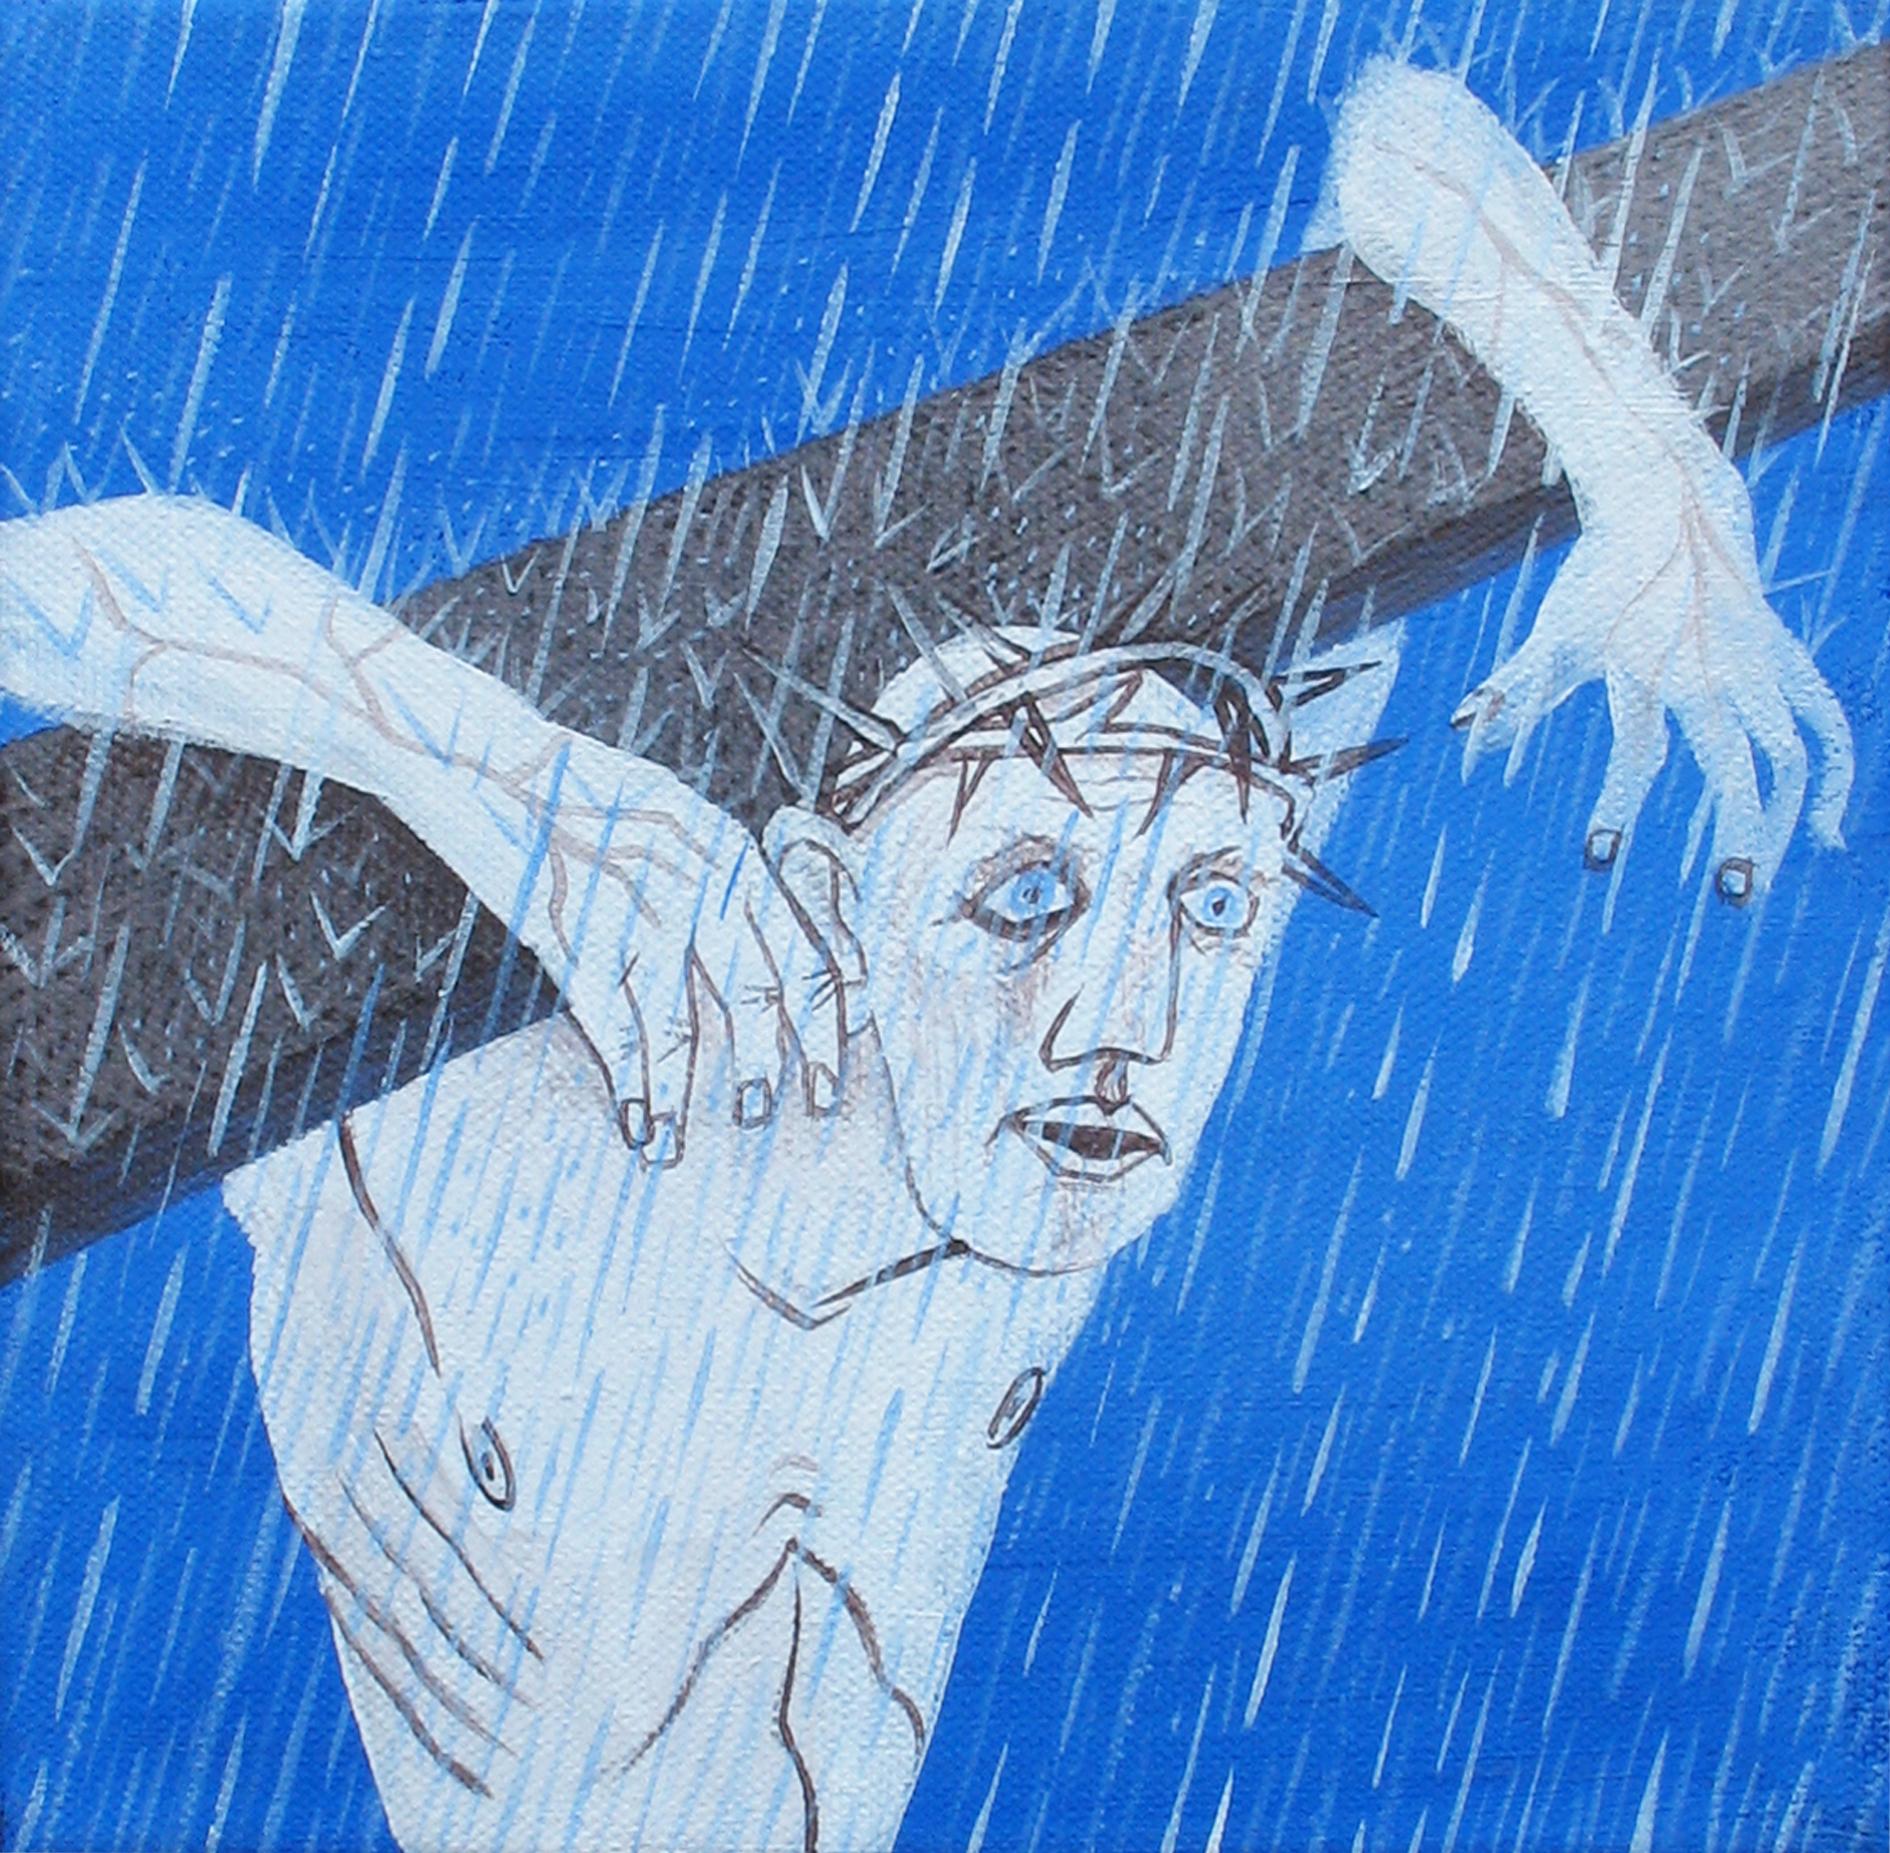 Alexandru Rădvan Figurative Painting – Kleiner Christus 3 – Zeitgenössische Kunst, figurativ, Gemälde, blau